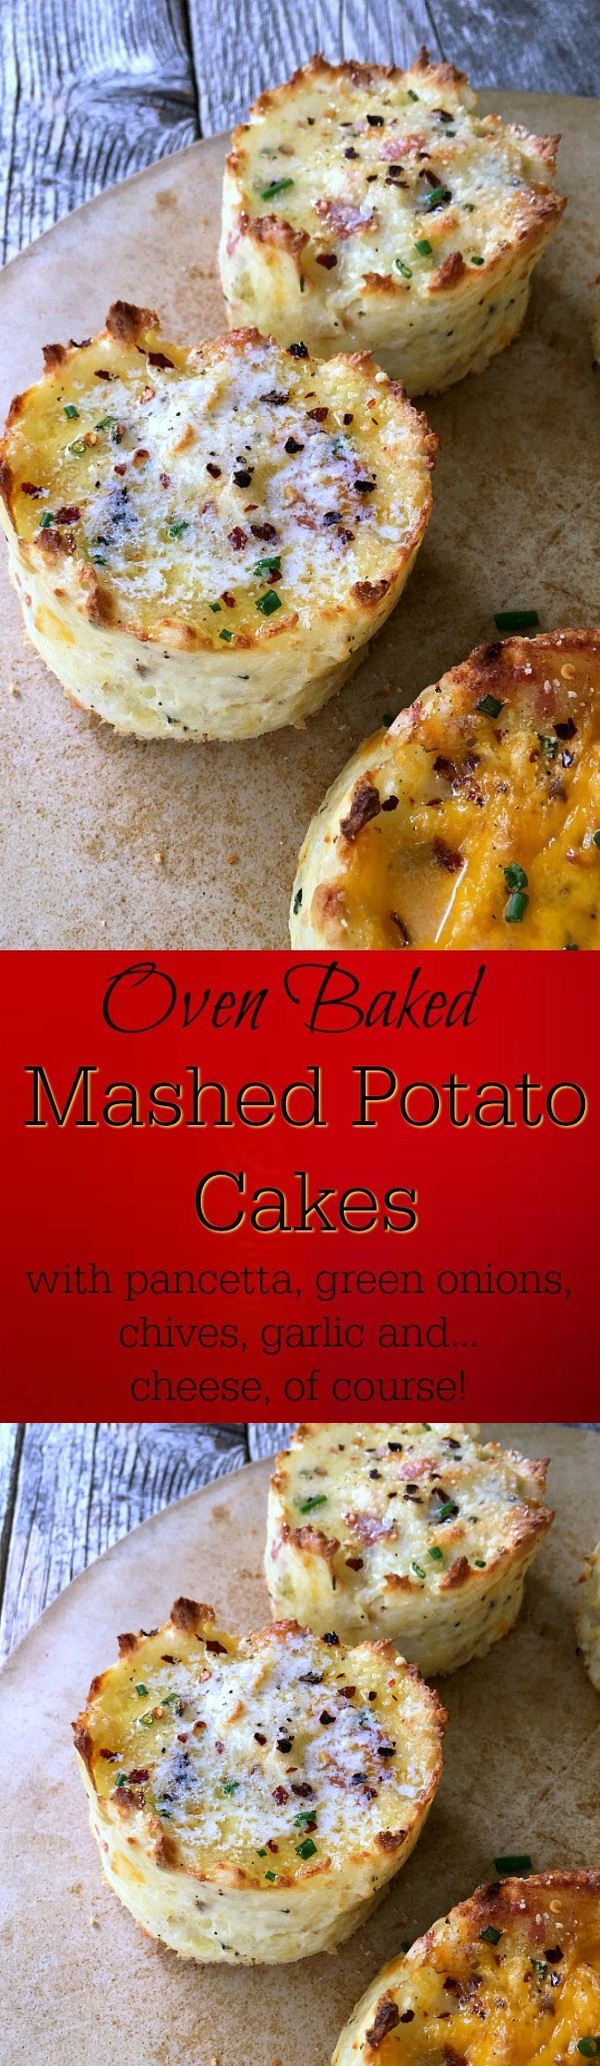 Baked Mashed Potato Cakes